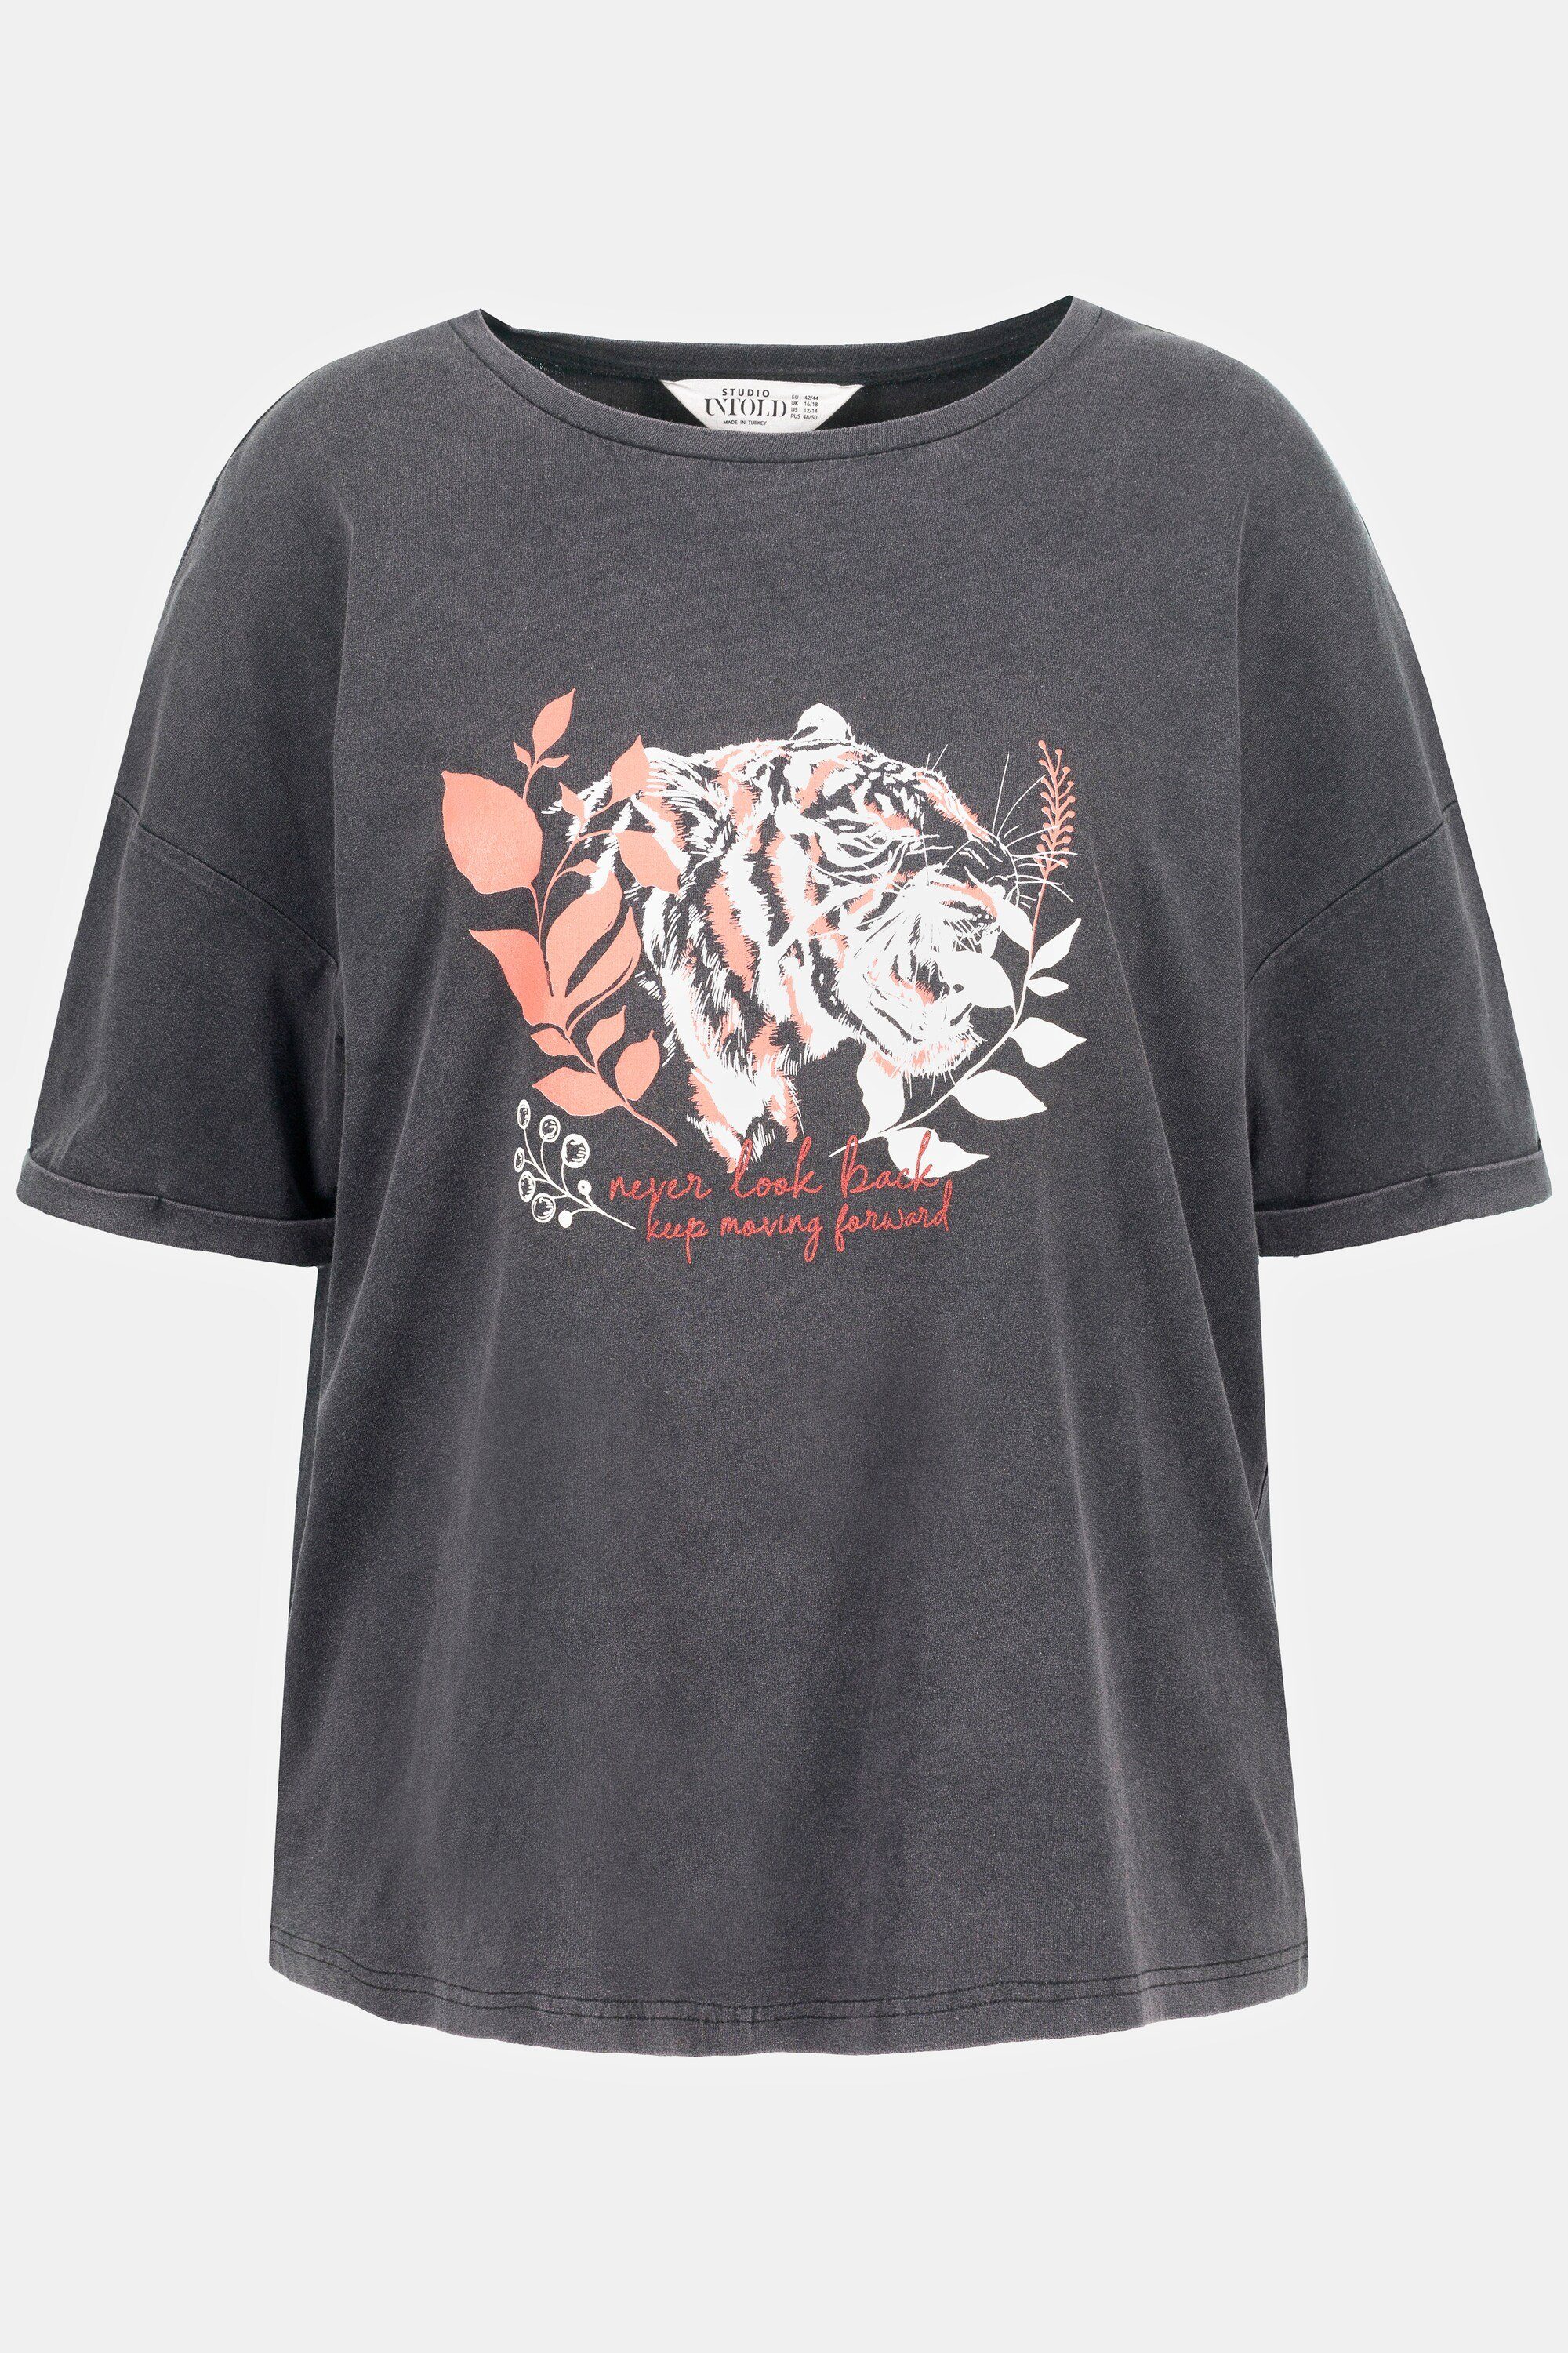 Studio Untold Longsleeve T-Shirt oversized Rundhals acid washed Tiger Motiv